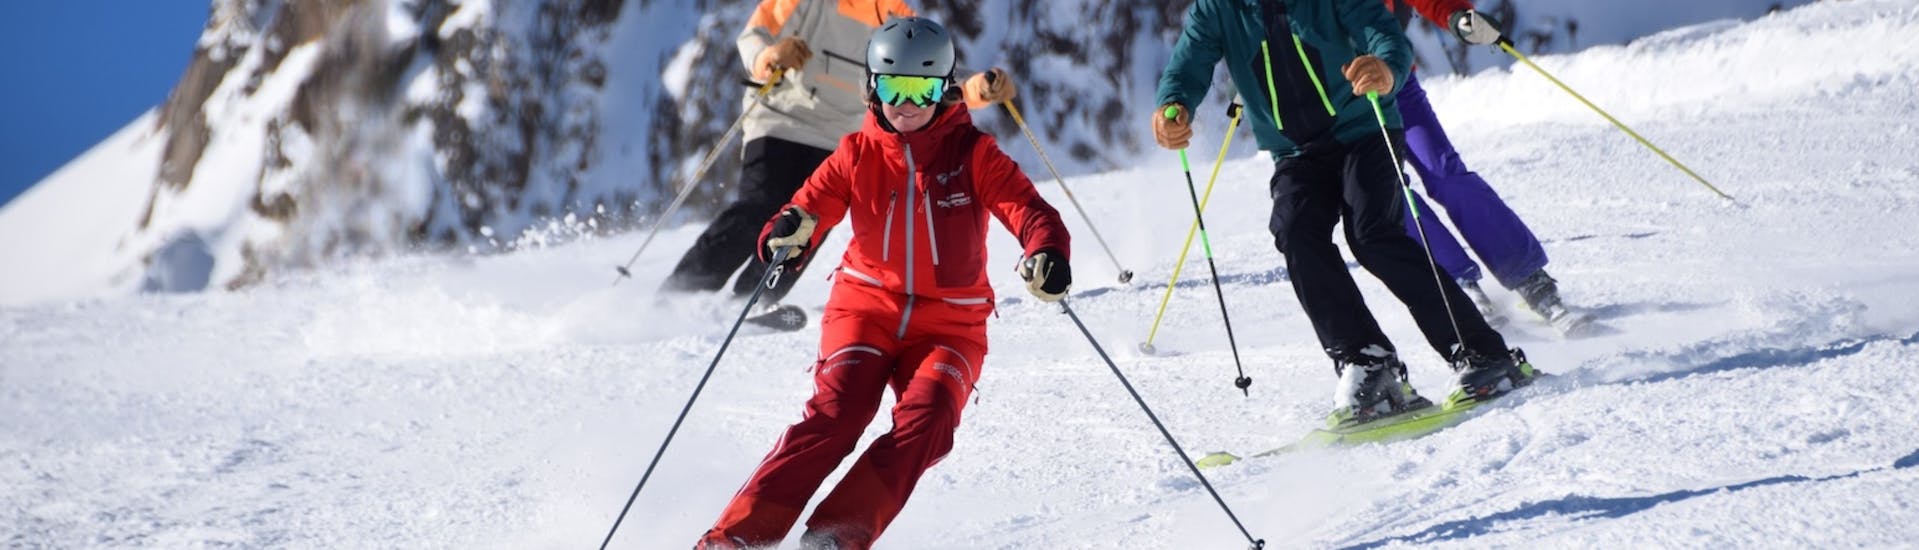 Clases de esquí para adultos a partir de 15 años para avanzados.